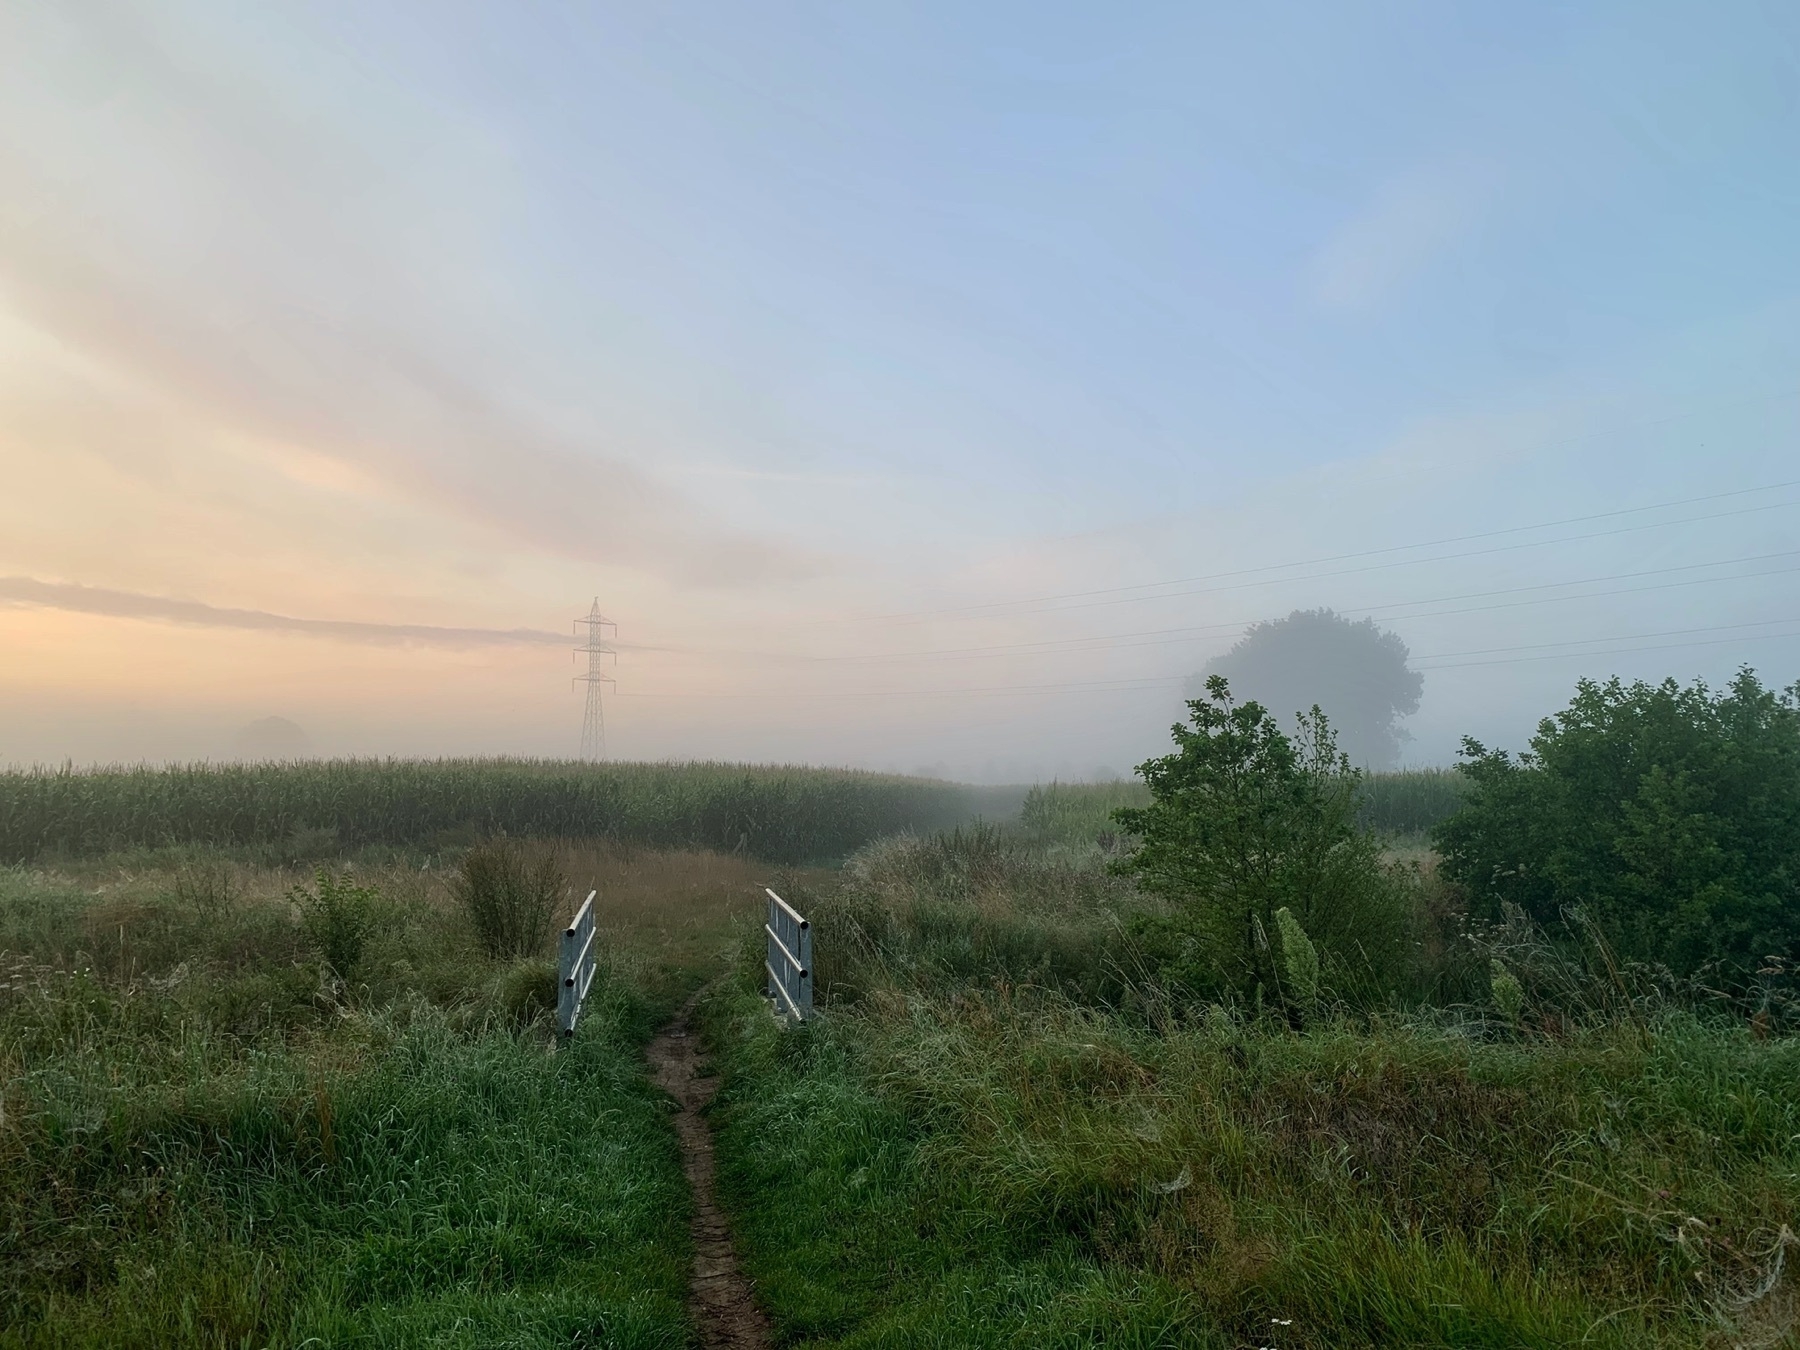 Path through field at sunrise